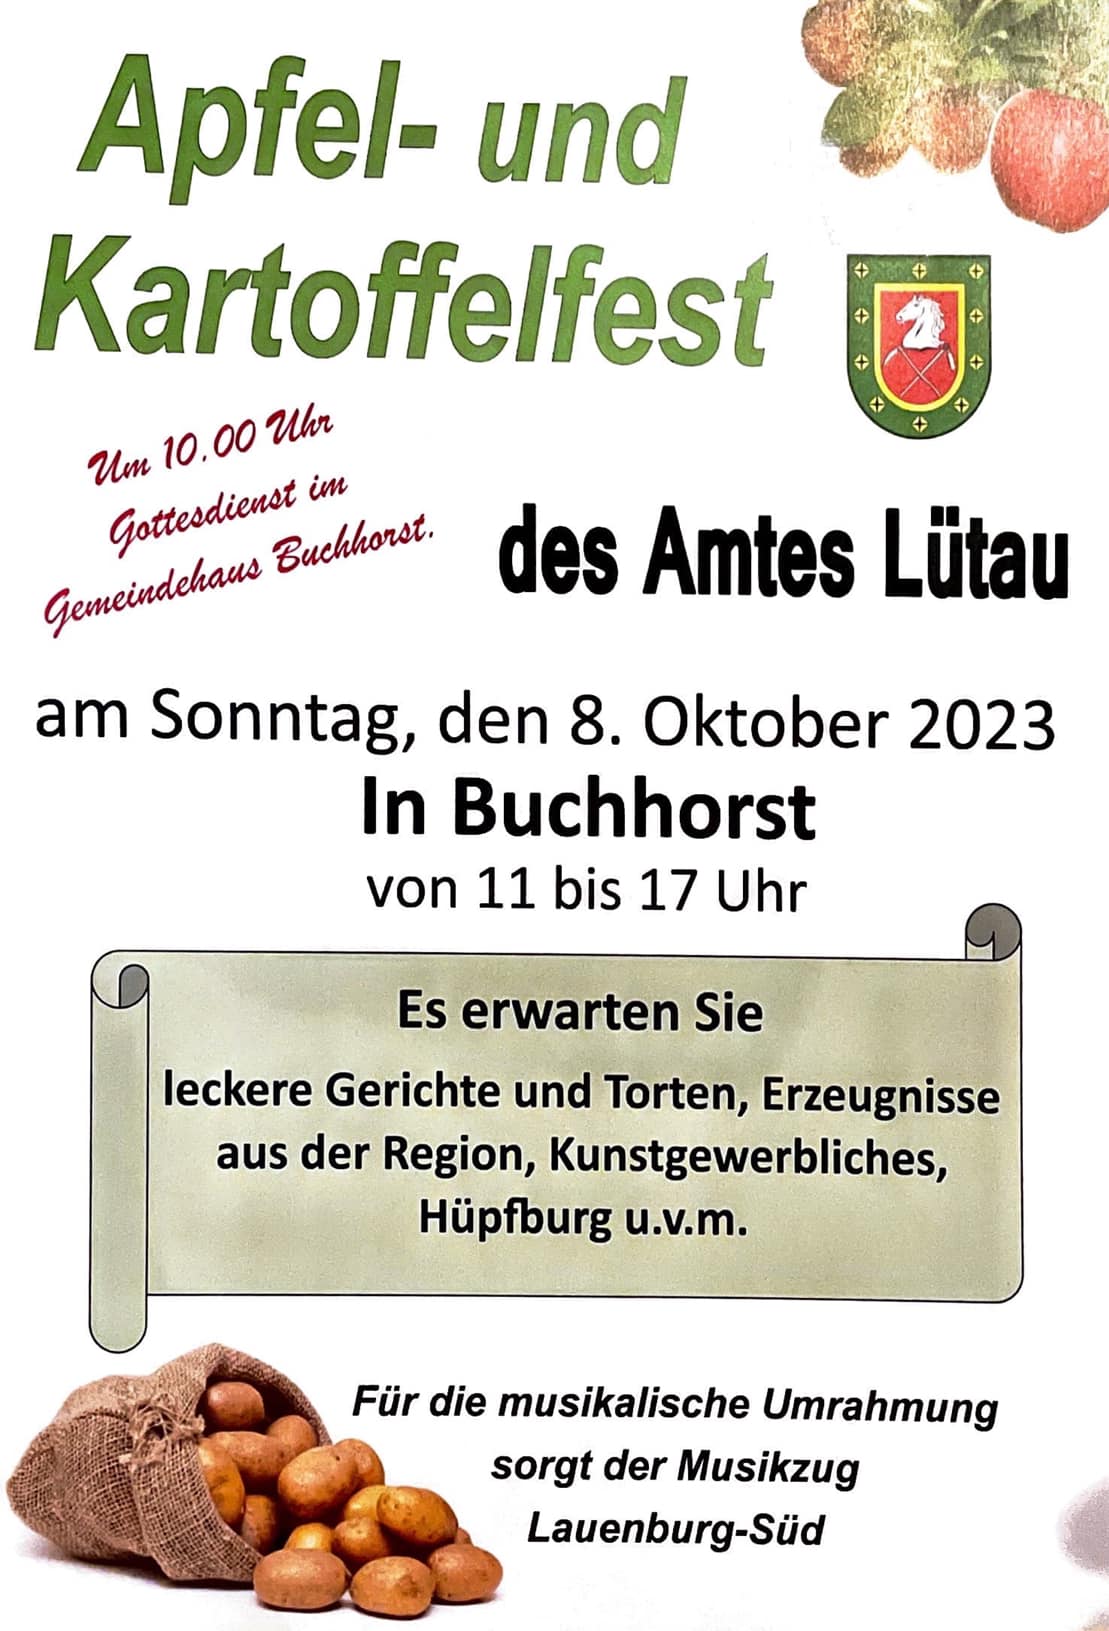 Apfel- und Kartoffelfest Buchhorst